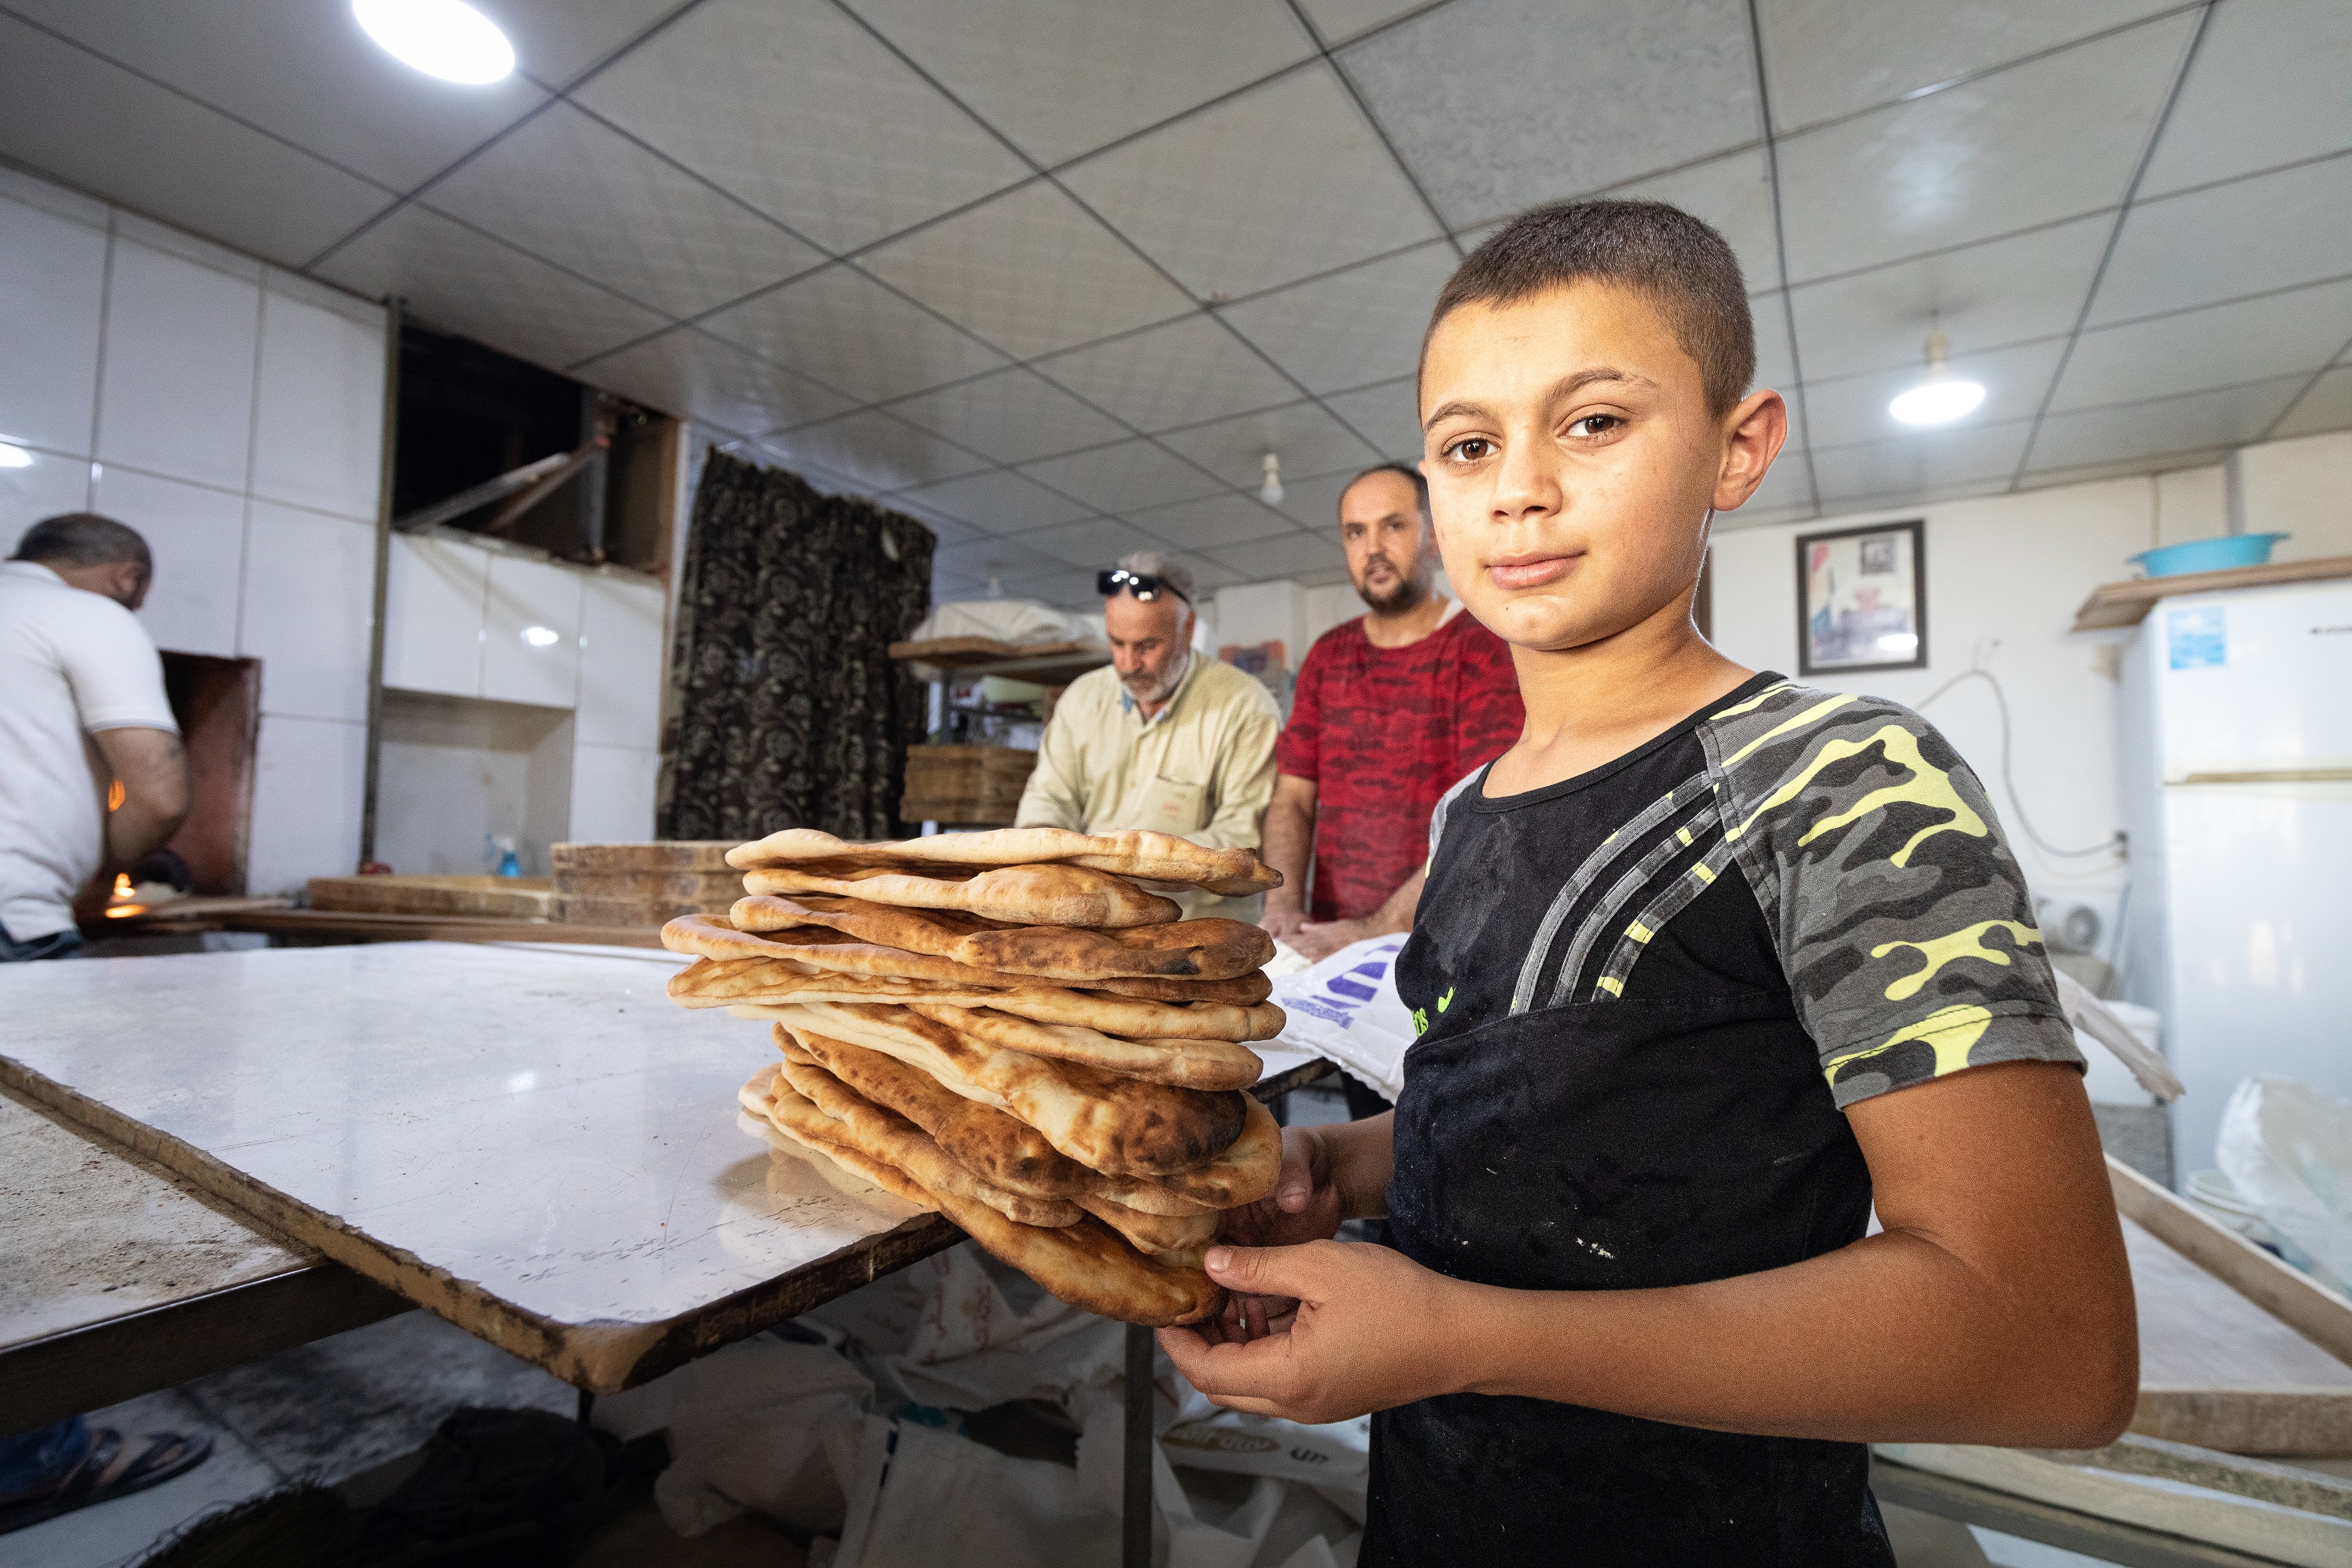 Qushtapa. Muhammad, młodociany pomocnik piekarza, prezentuje świeżo upieczone arabskie chlebki. Chłopak jest dumny z tego, że pomaga rodzinie.